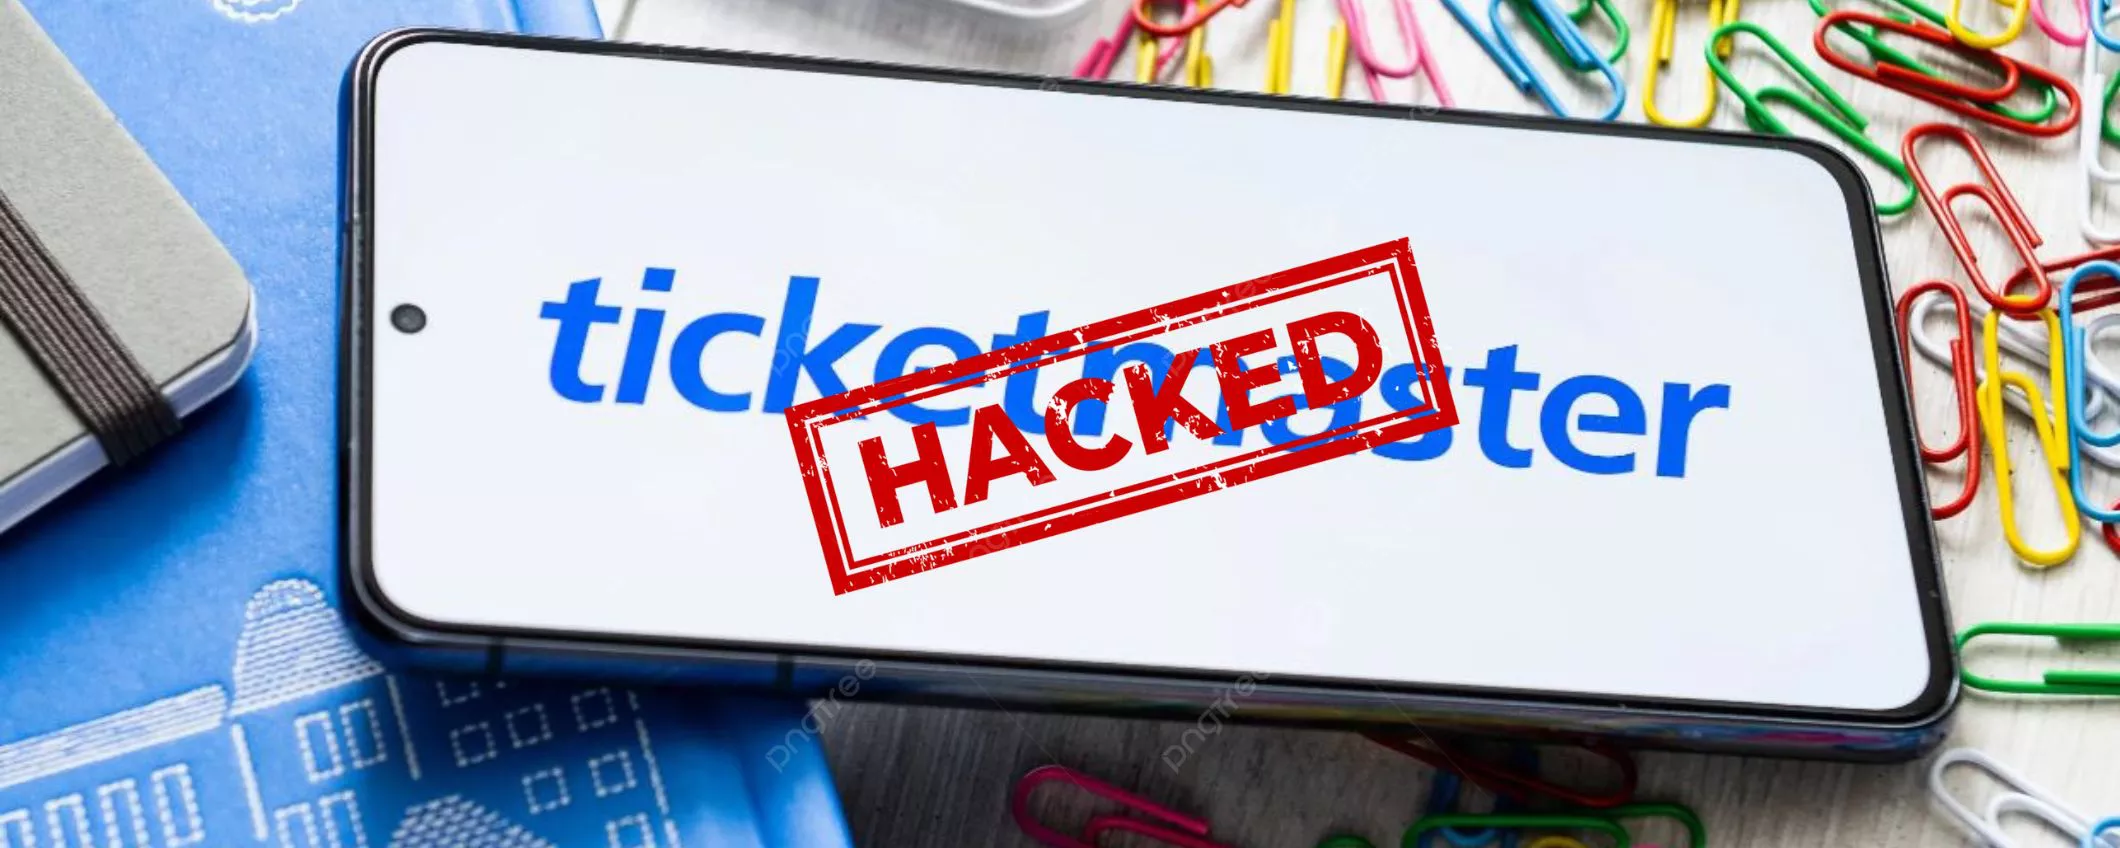 Ticketmaster sotto attacco hacker: rubati dati di 560 milioni di utenti